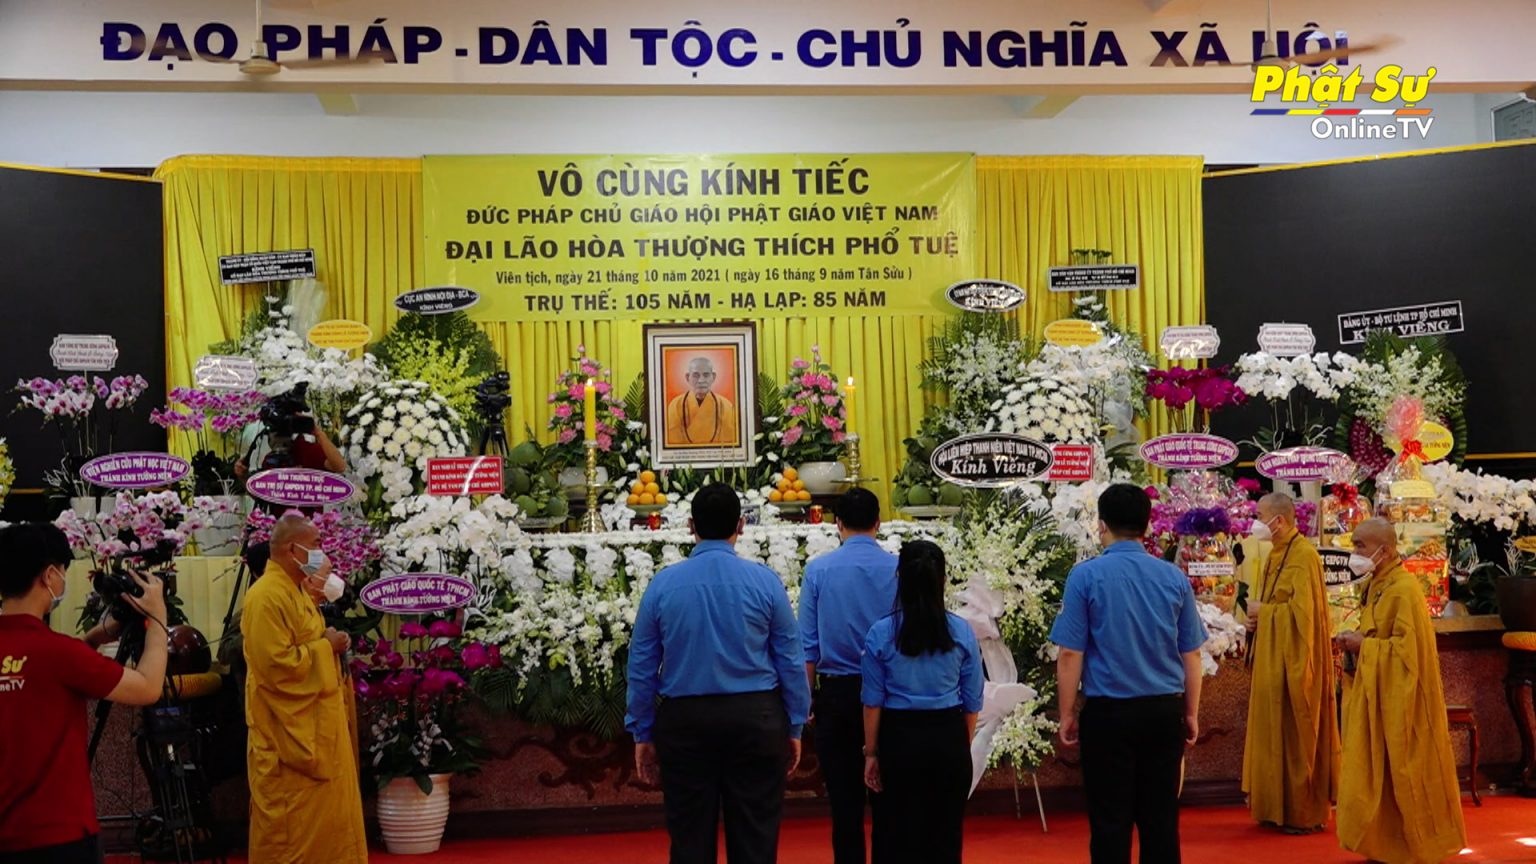 TP.HCM: Phái đoàn Hội Liên hiệp Thanh niên Việt Nam Thành phố viếng vọng tang Đức Pháp chủ GHPGVN